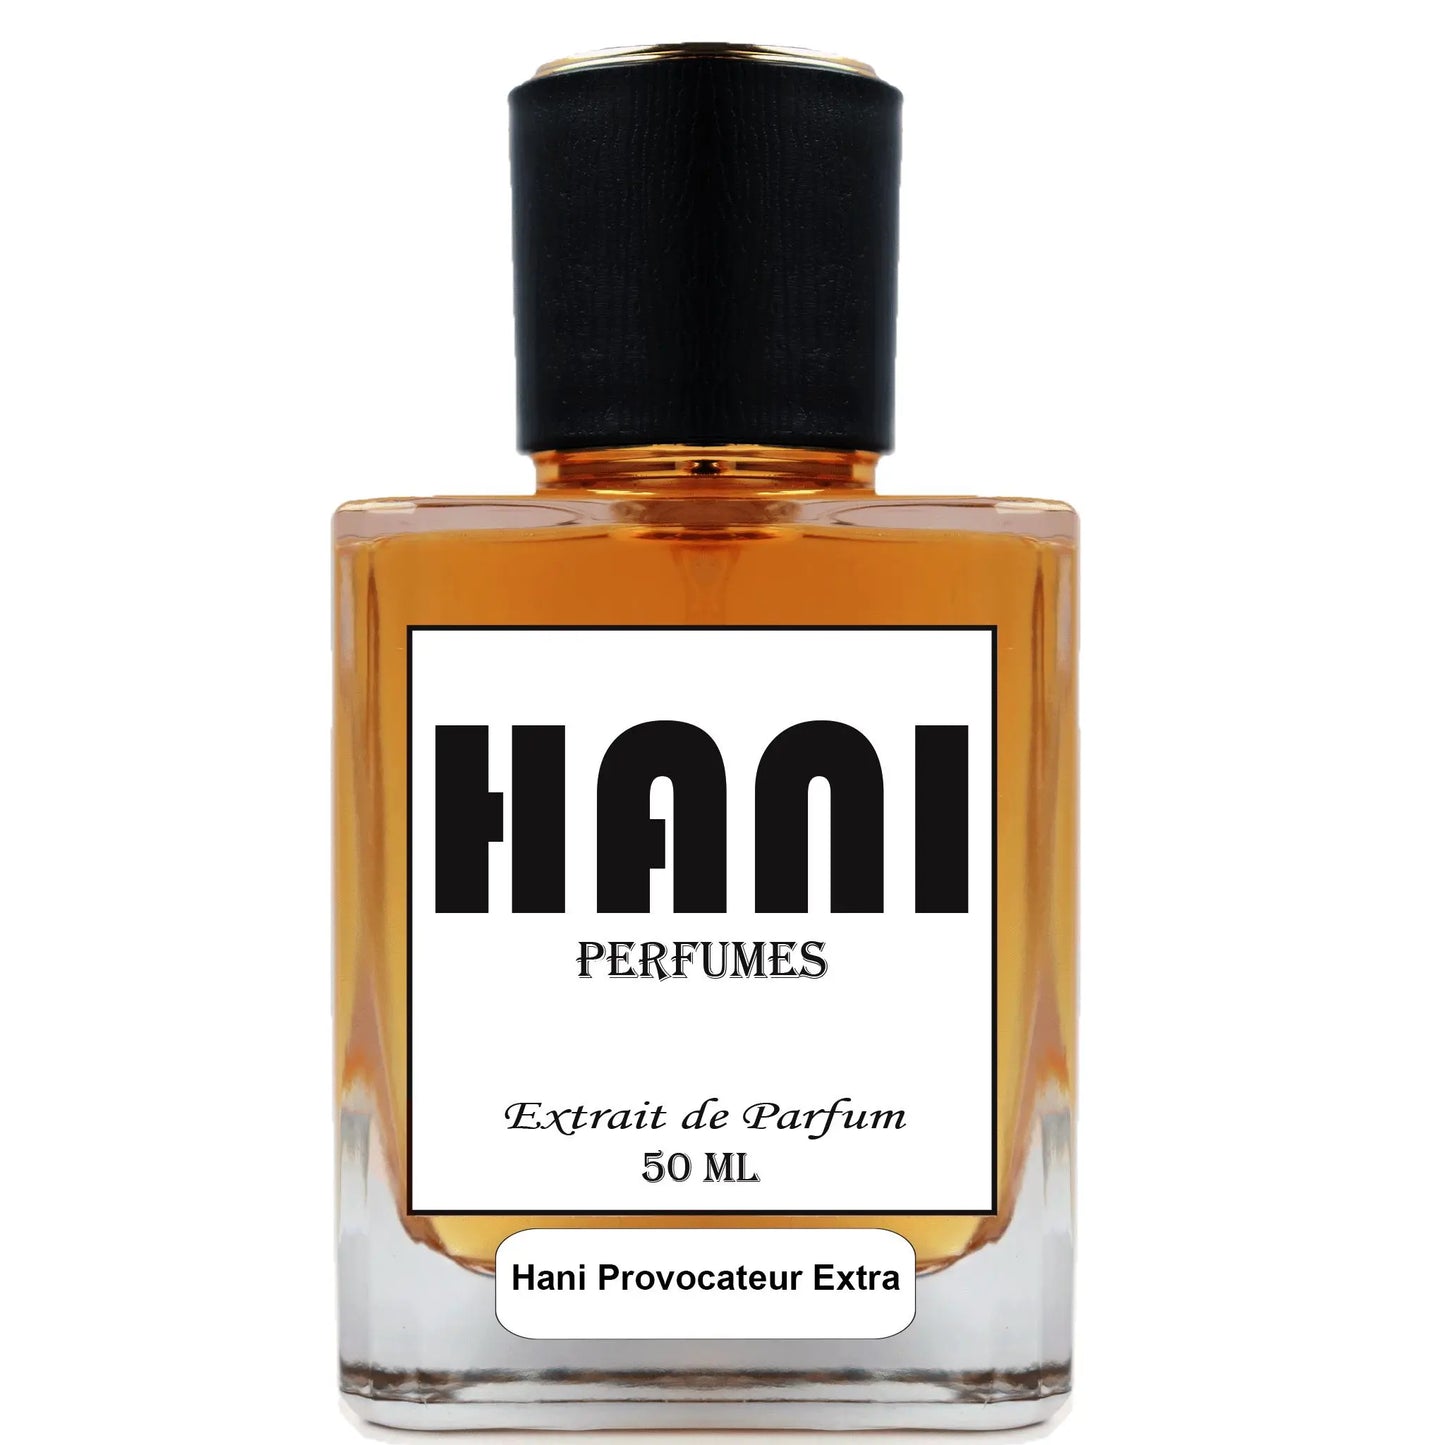 Hani Provocateur Extra Damen Parfum duftzwilling parfum dupe